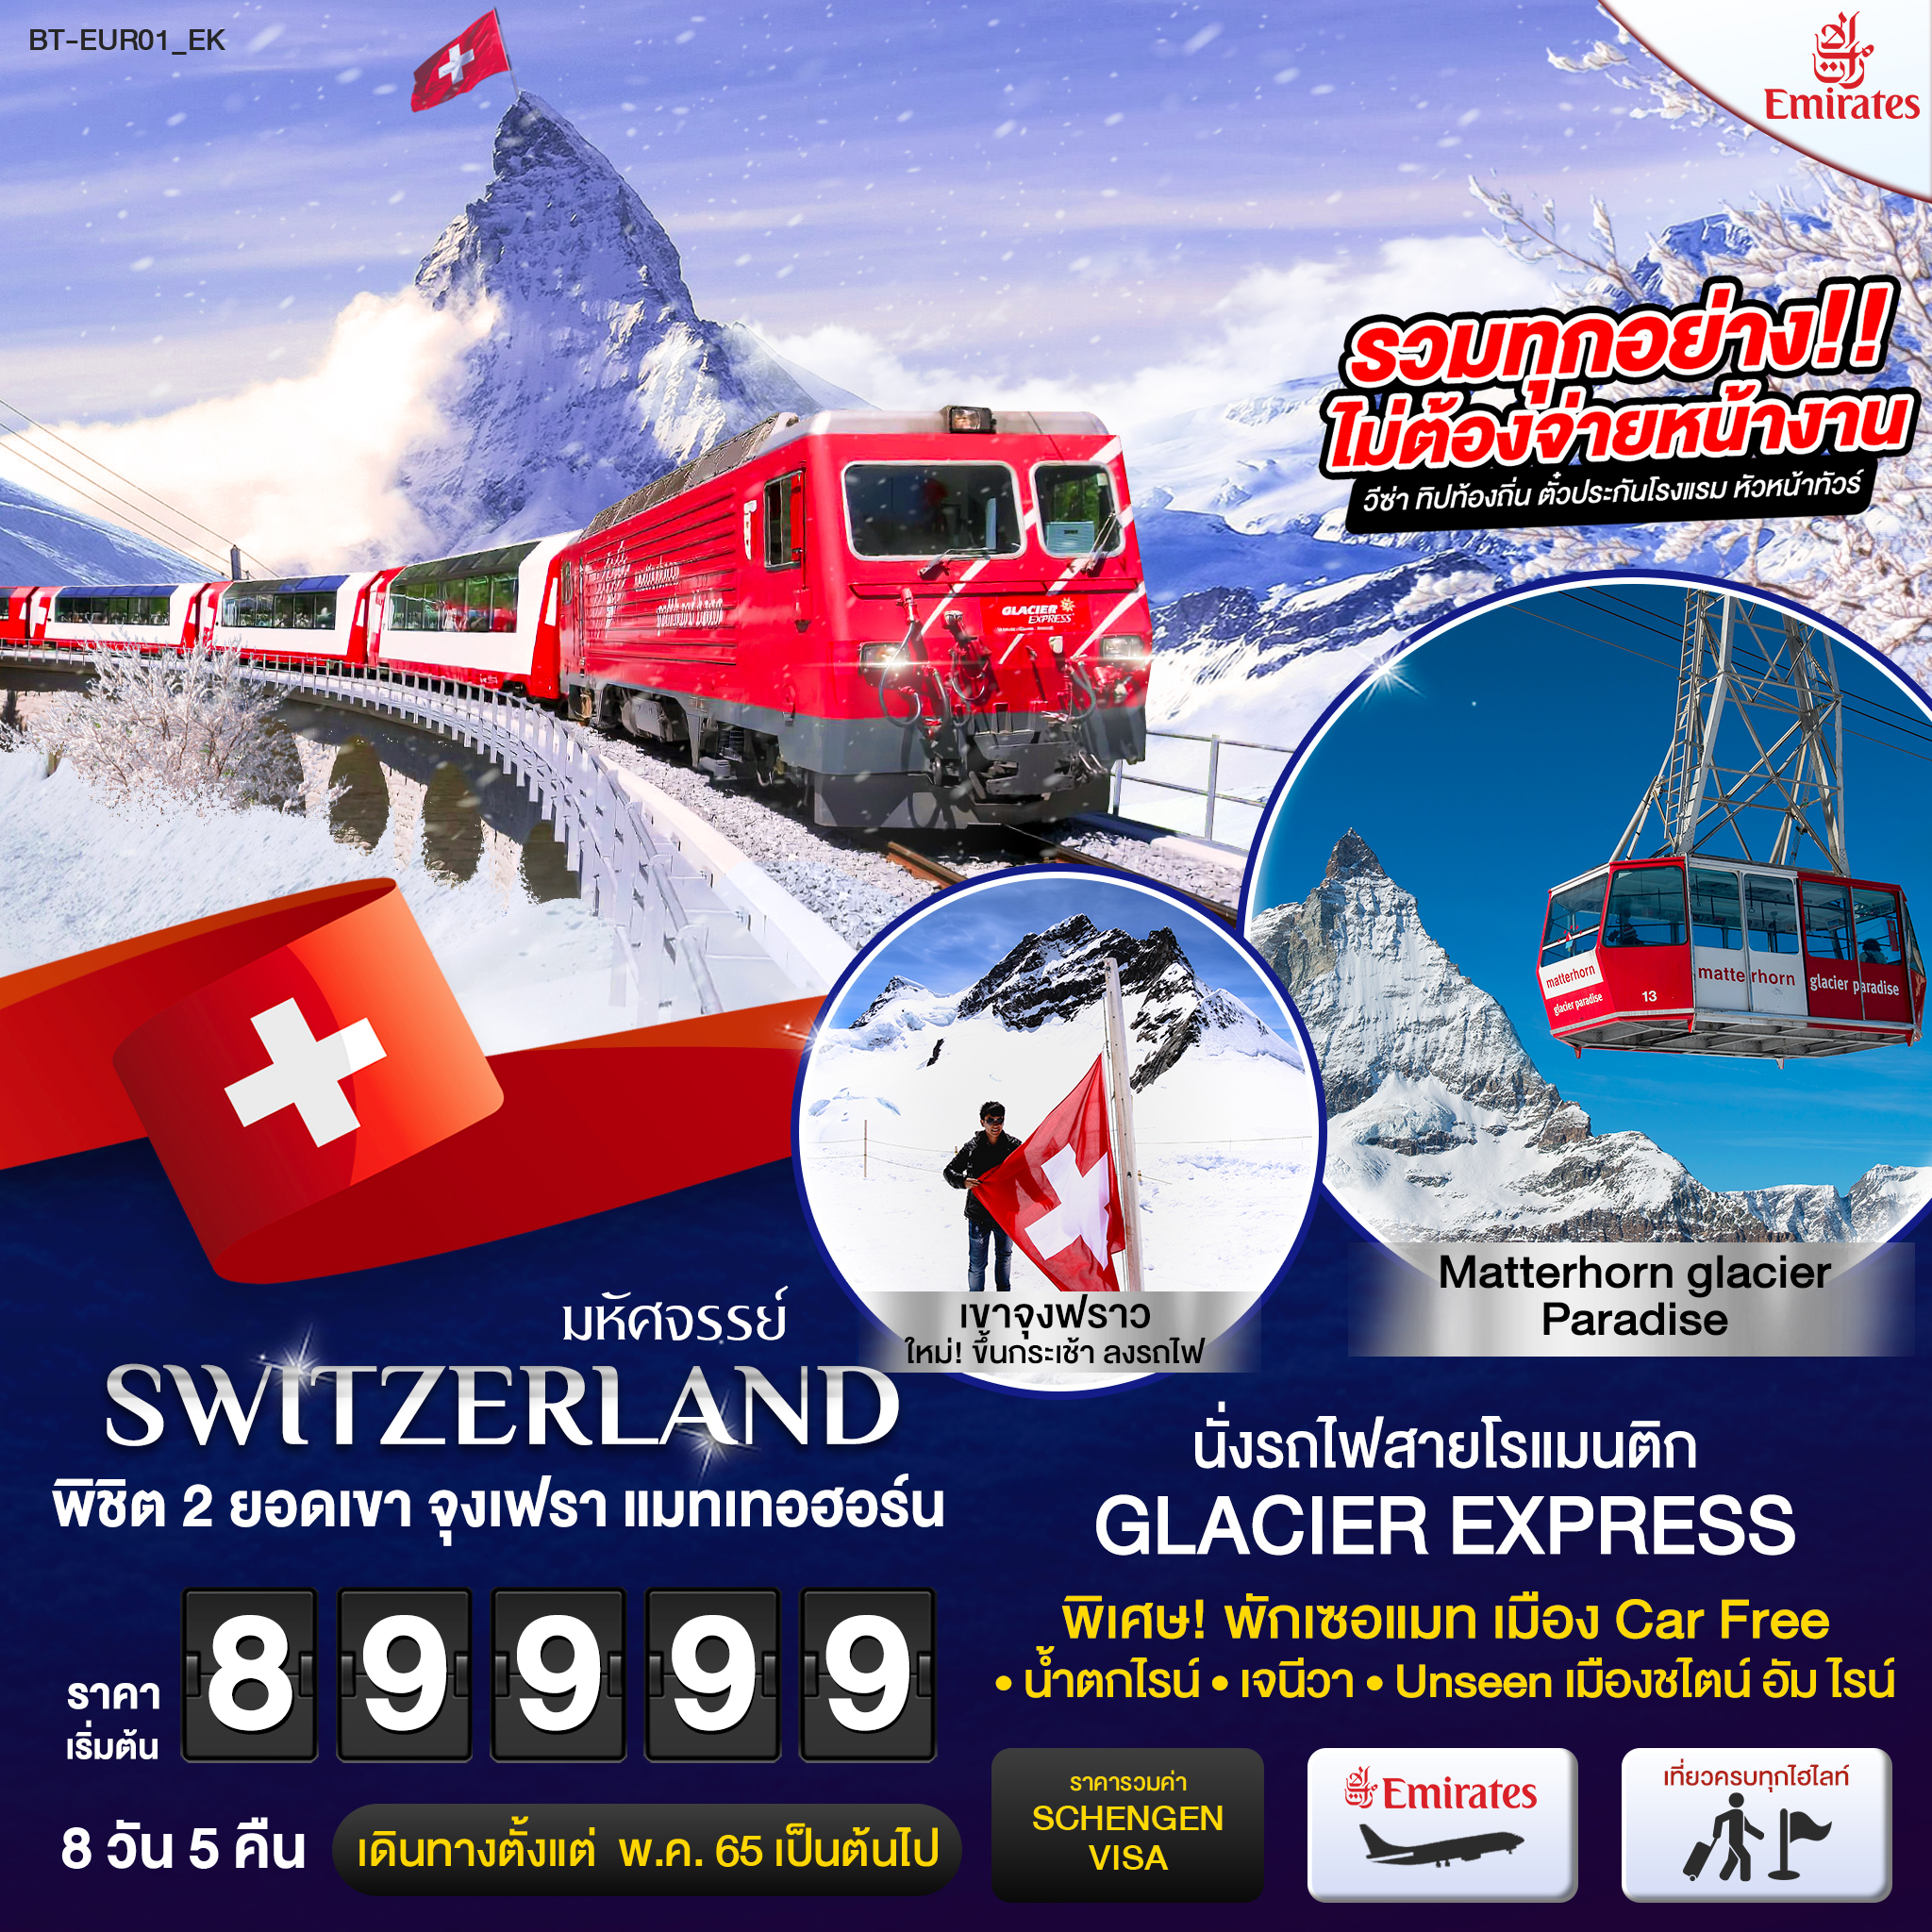 มหัศจรรย์...สวิสเซอร์แลนด์ นั่งรถไฟ Glacier Express